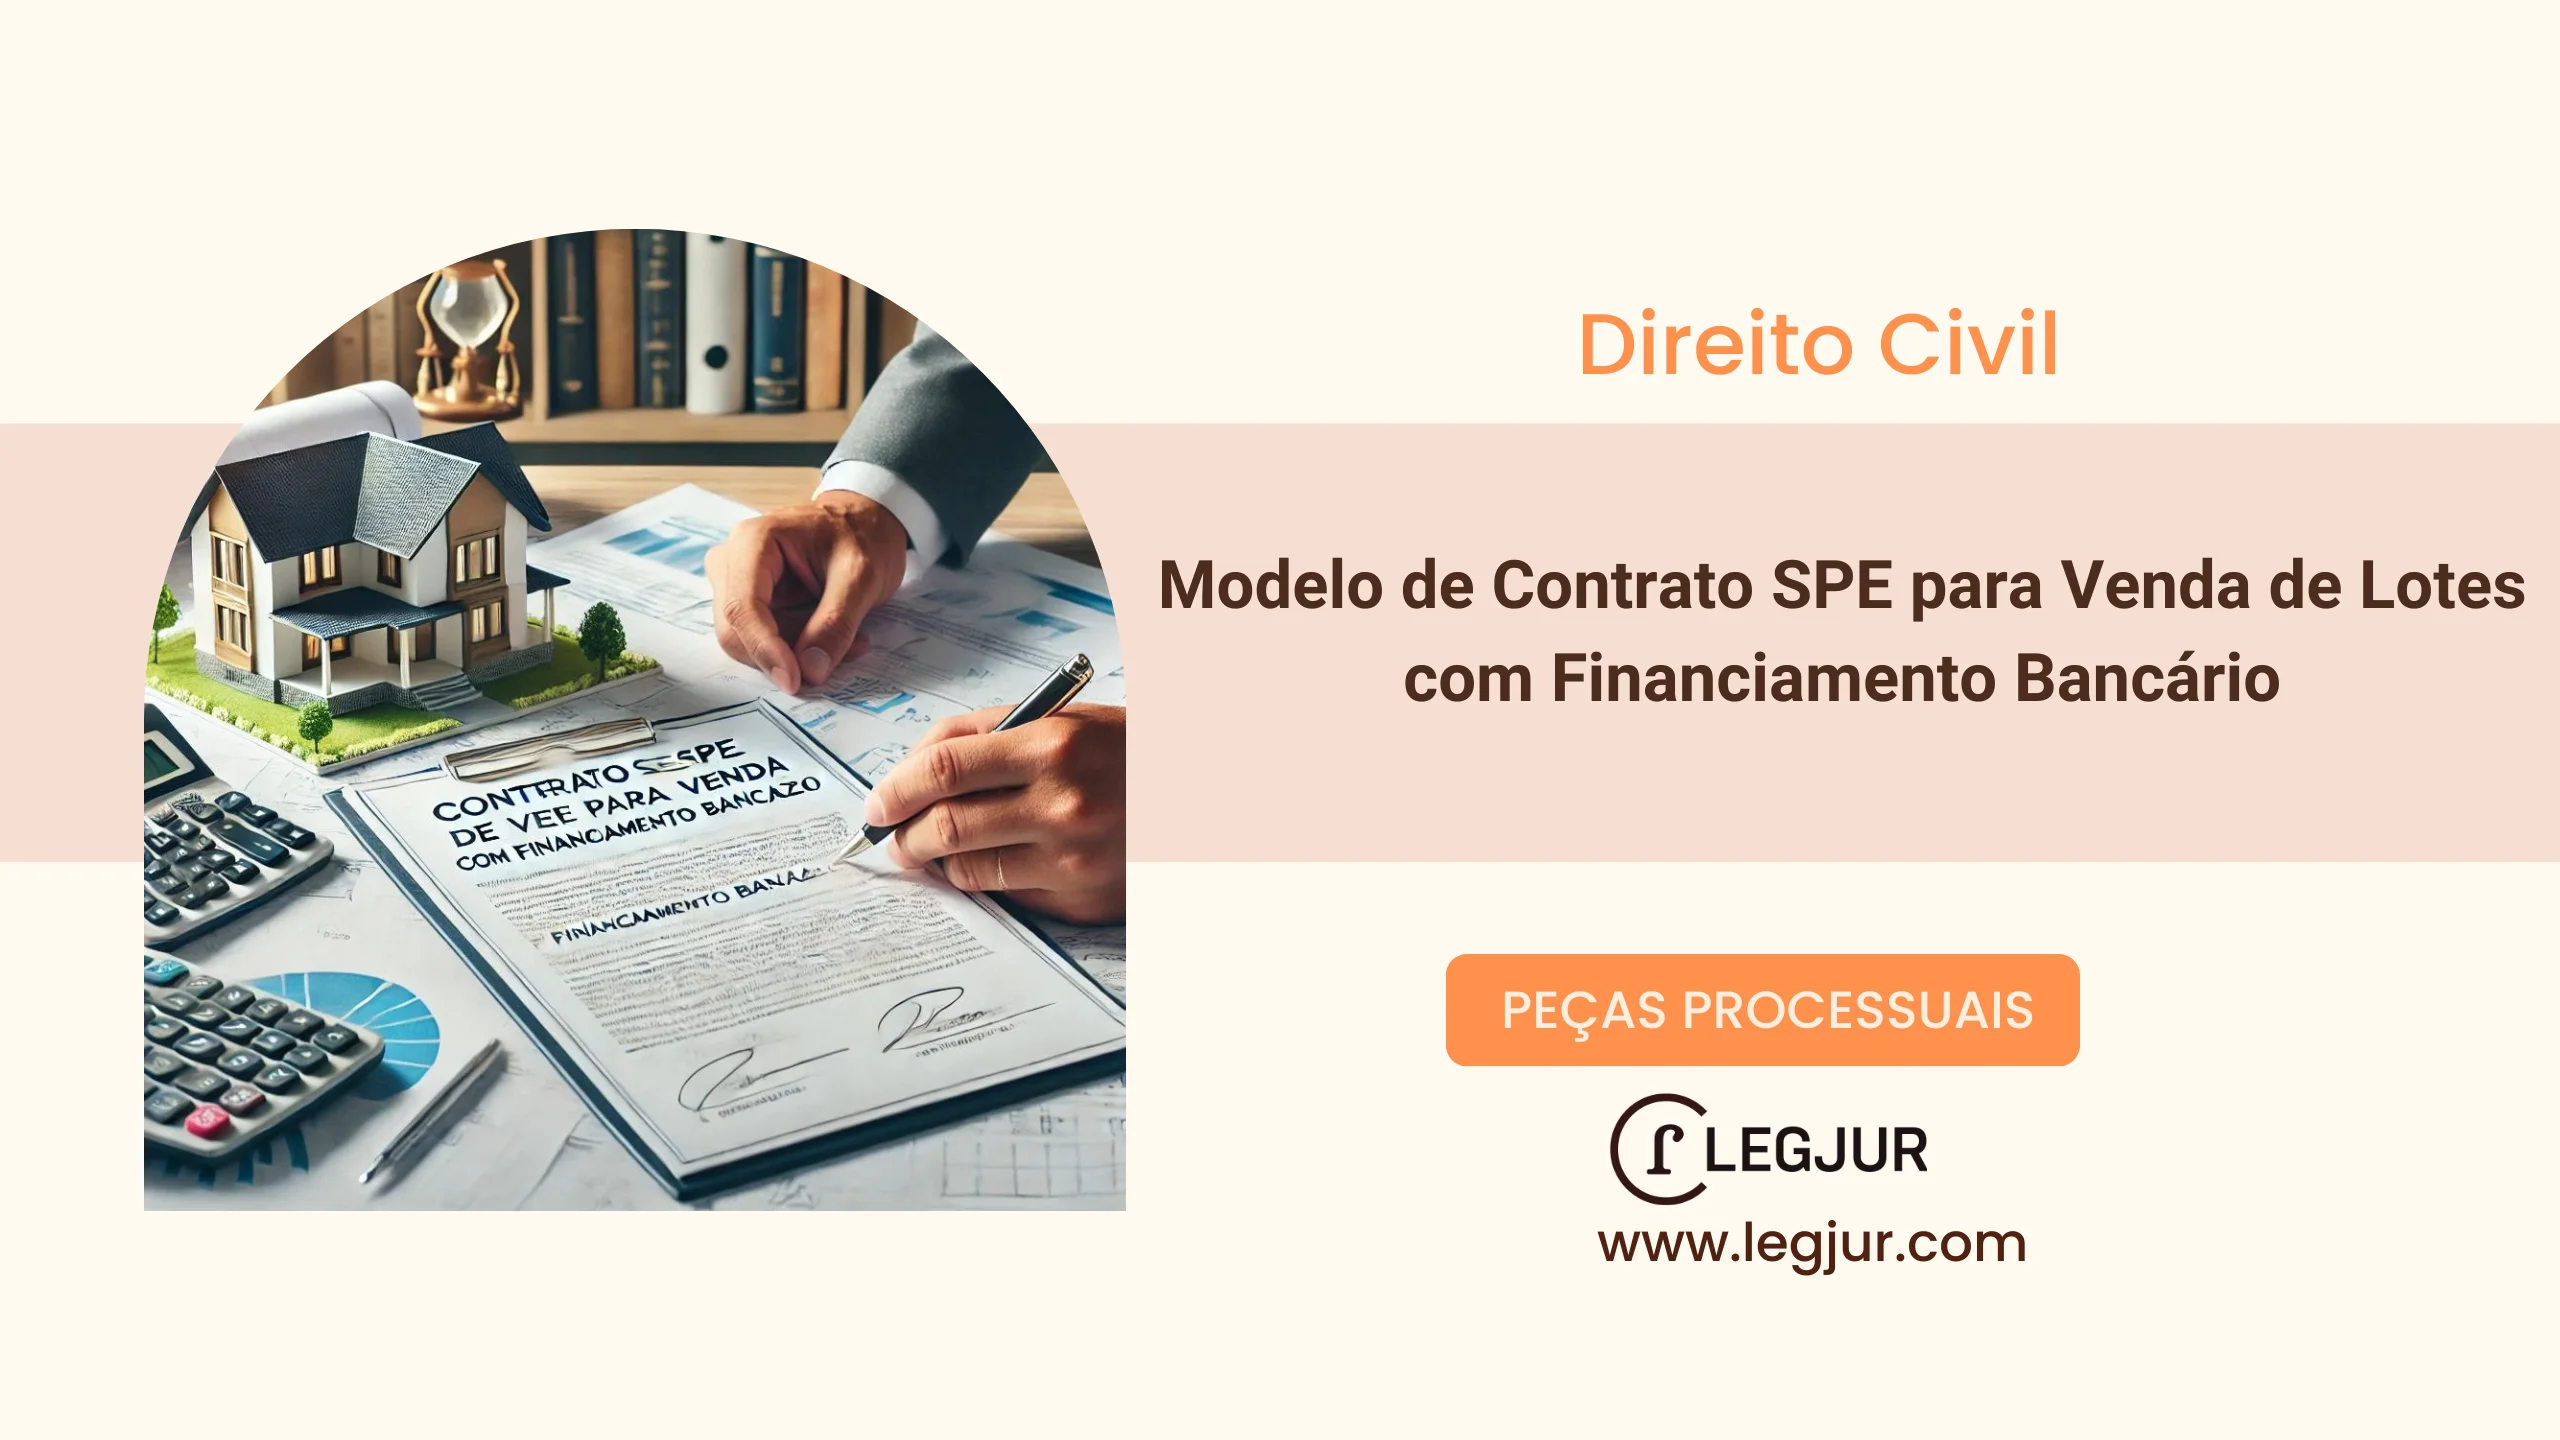 Modelo de Contrato SPE para Venda de Lotes com Financiamento Bancário